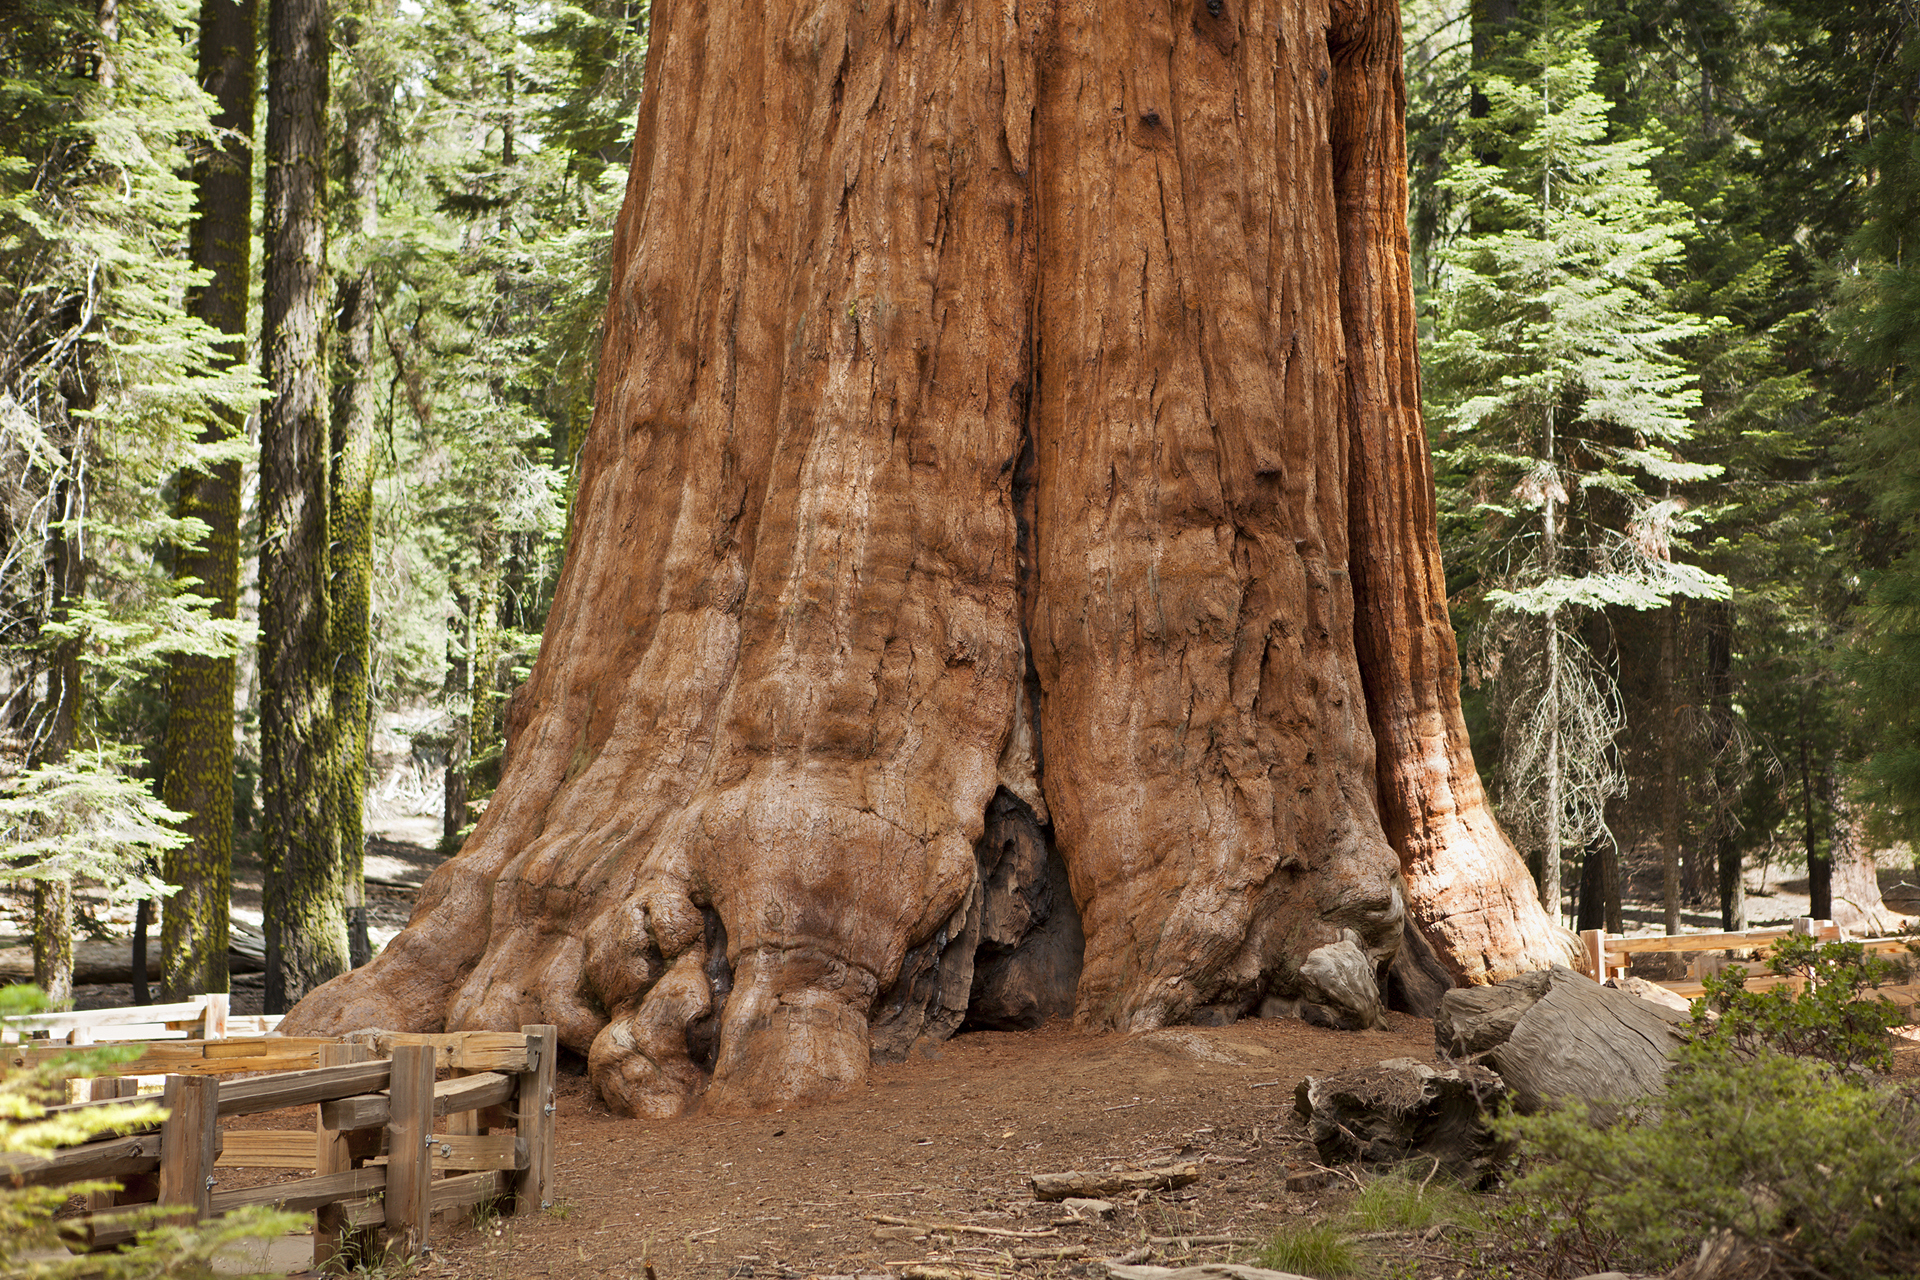 Primer plano del árbol Sequoia gigante, en el Parque Nacional Sequoia.  Este árbol es conocido como el árbol General Sherman.  Es el árbol más grande conocido por volumen y se cree que tiene entre 2300 y 2700 años.